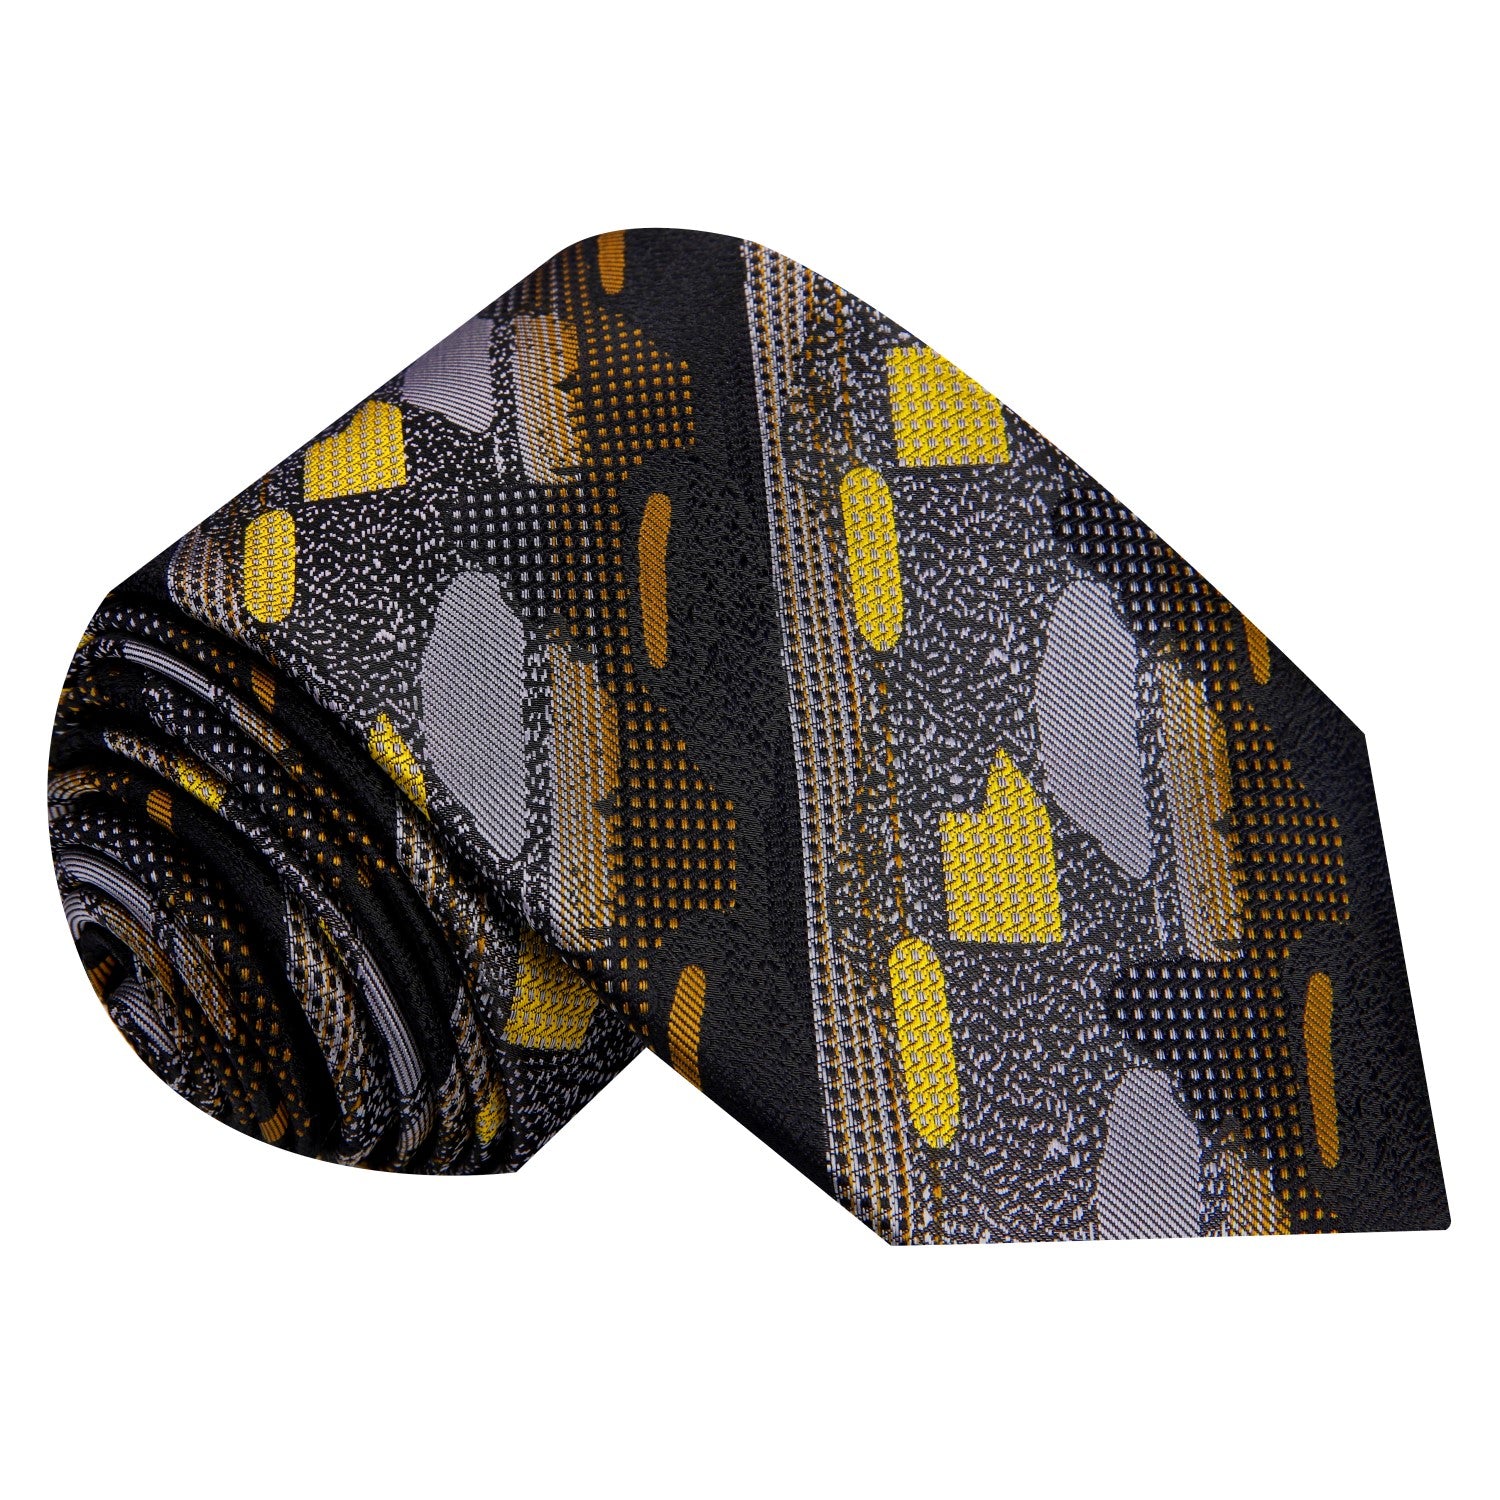 Black & Gold Graphite Necktie